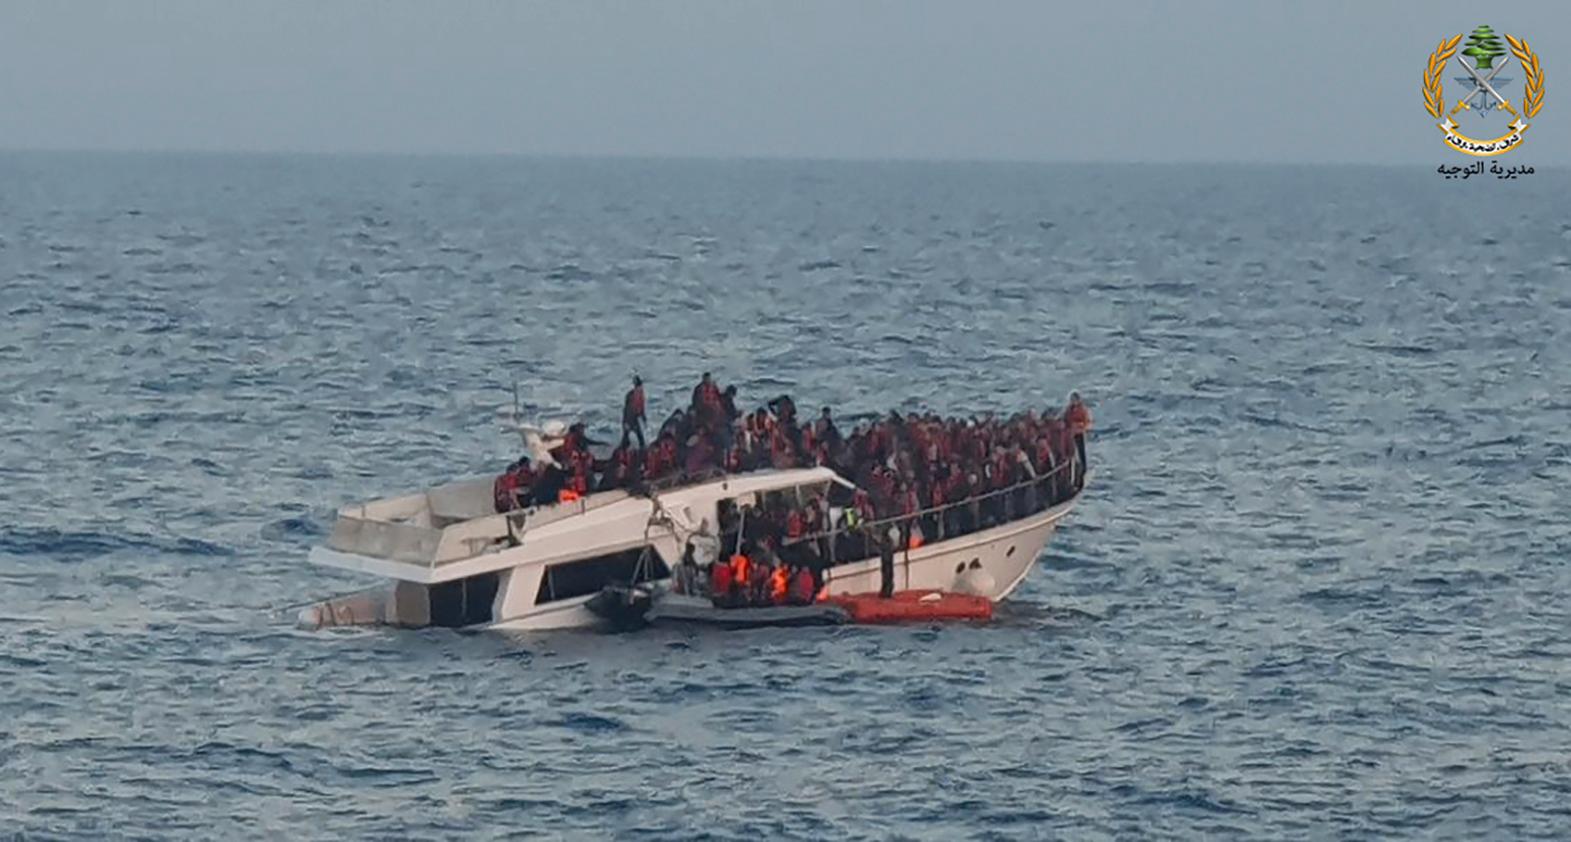 Migranter räddas från en sjunkande båt utanför Libanon i Medelhavet. Arkivfoto.